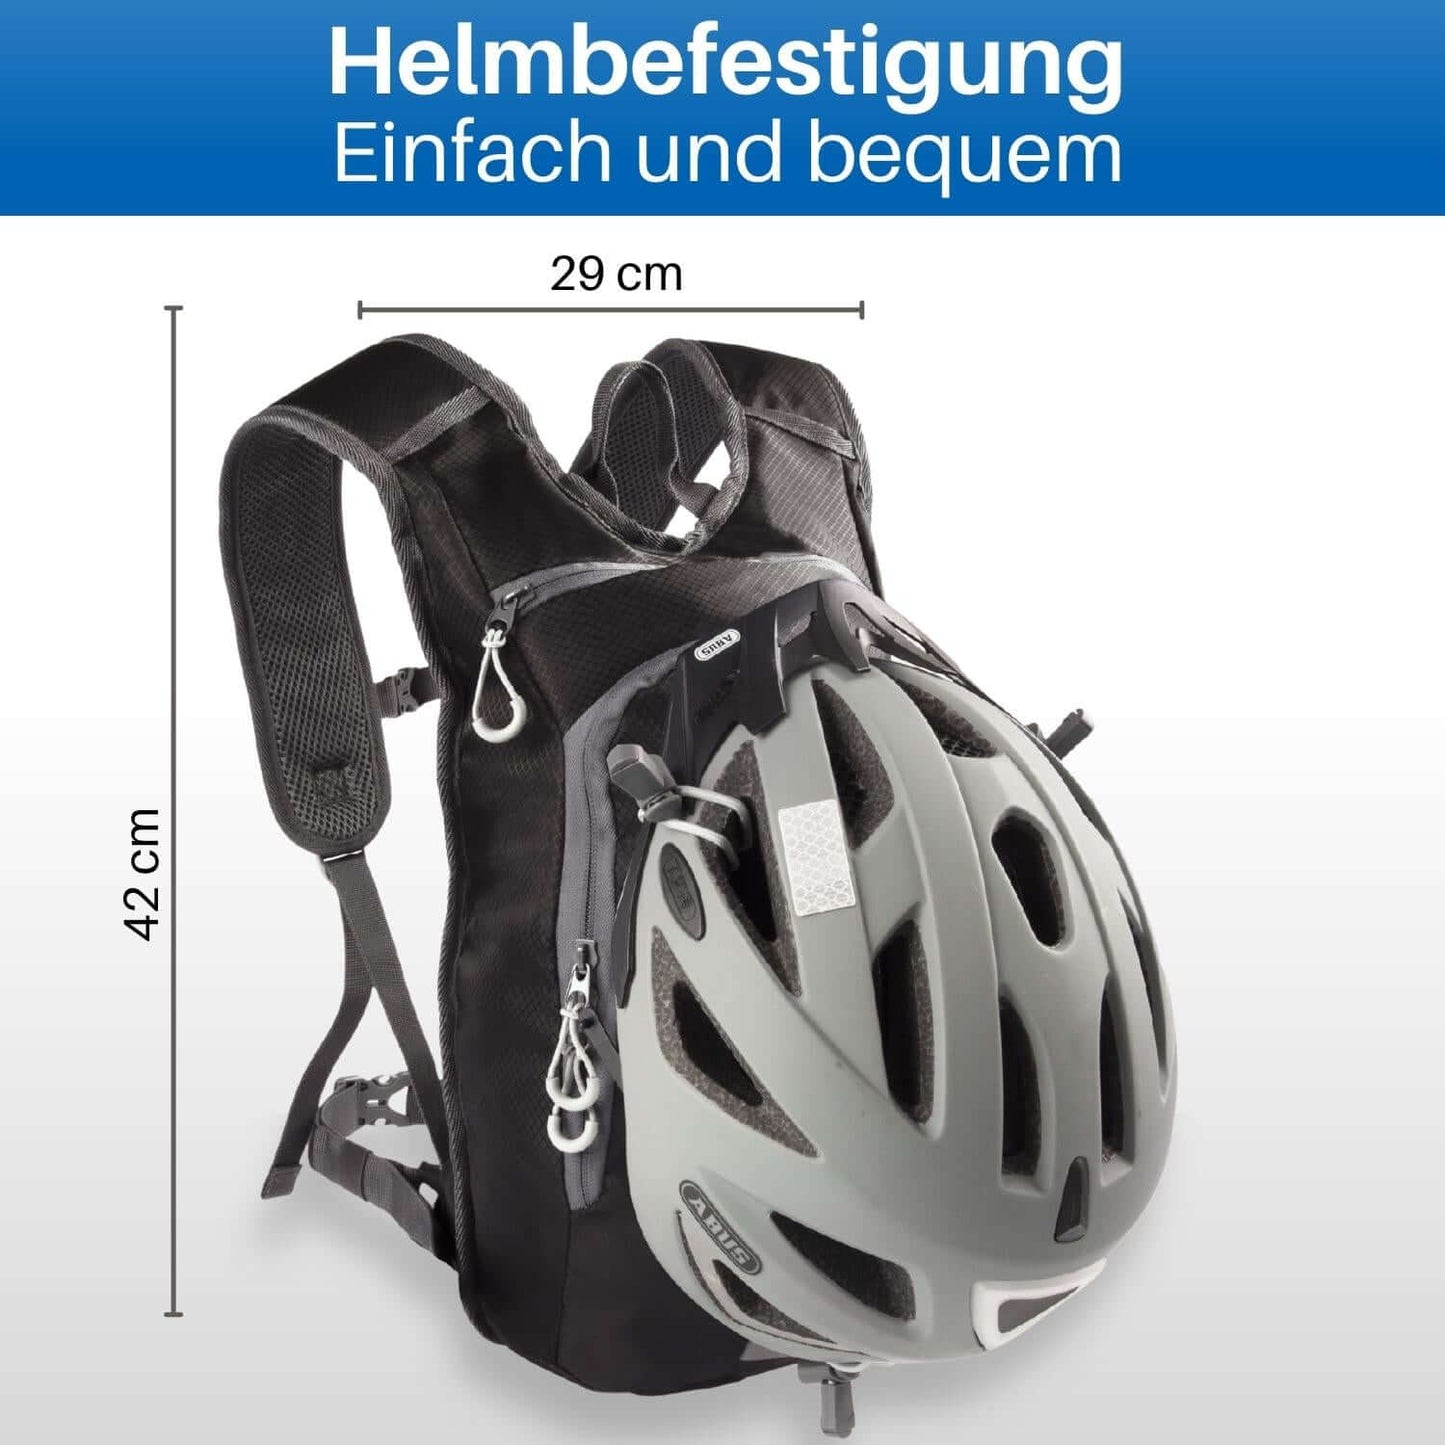 Der kleine, leichte Rucksack bietet zudem eine Helmbefestigung.